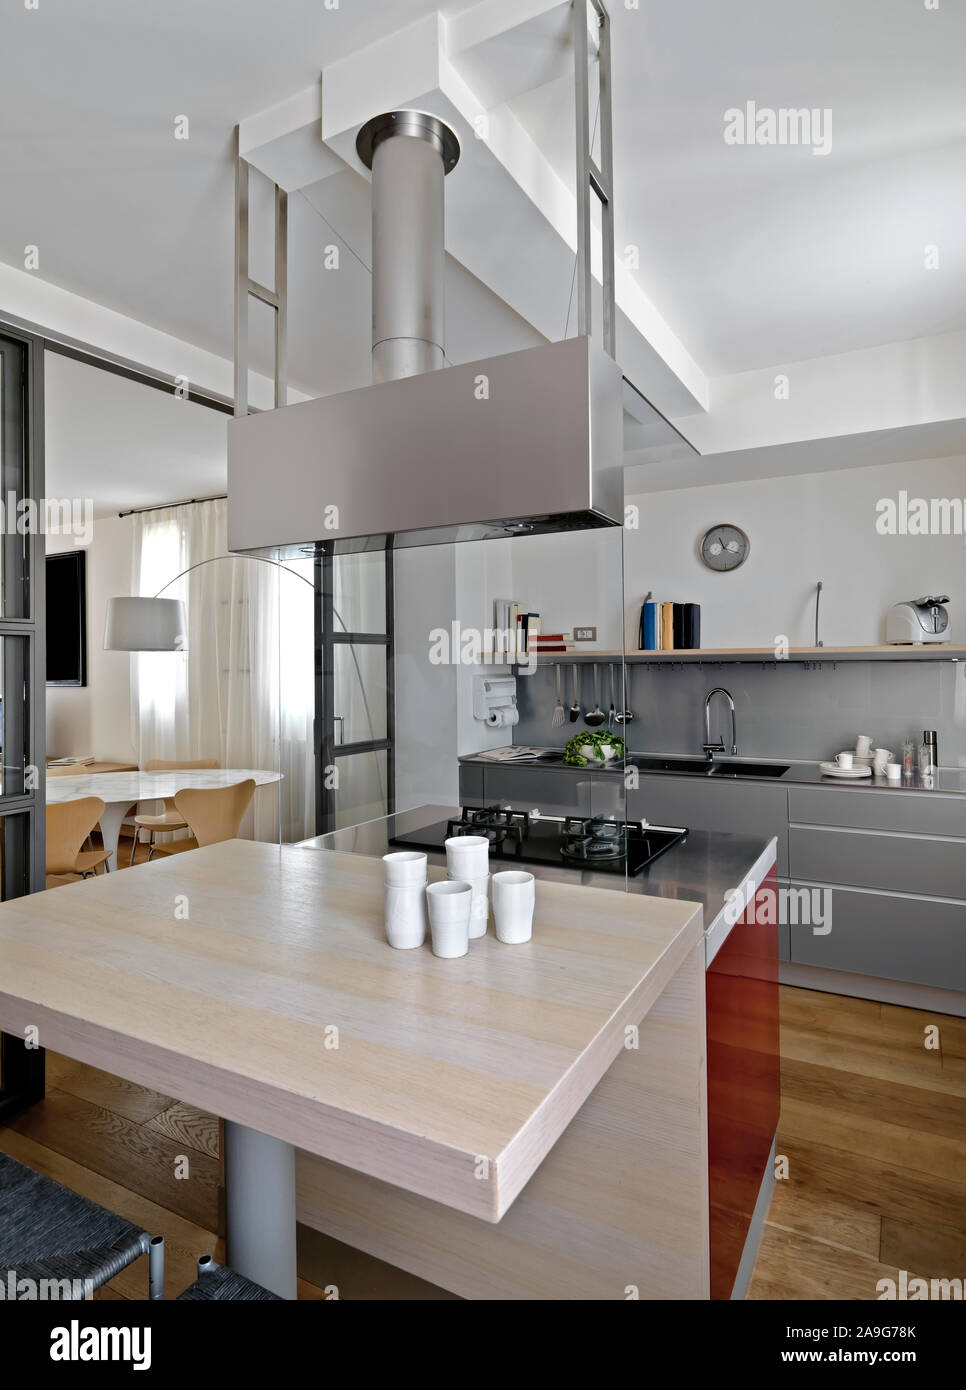 Interior shot di una cucina moderna in primo piano l'Isola per cucina in legno con tavolo da pranzo e piano cottura a gas mentre sullo sfondo la cucina armadi a bu Foto Stock